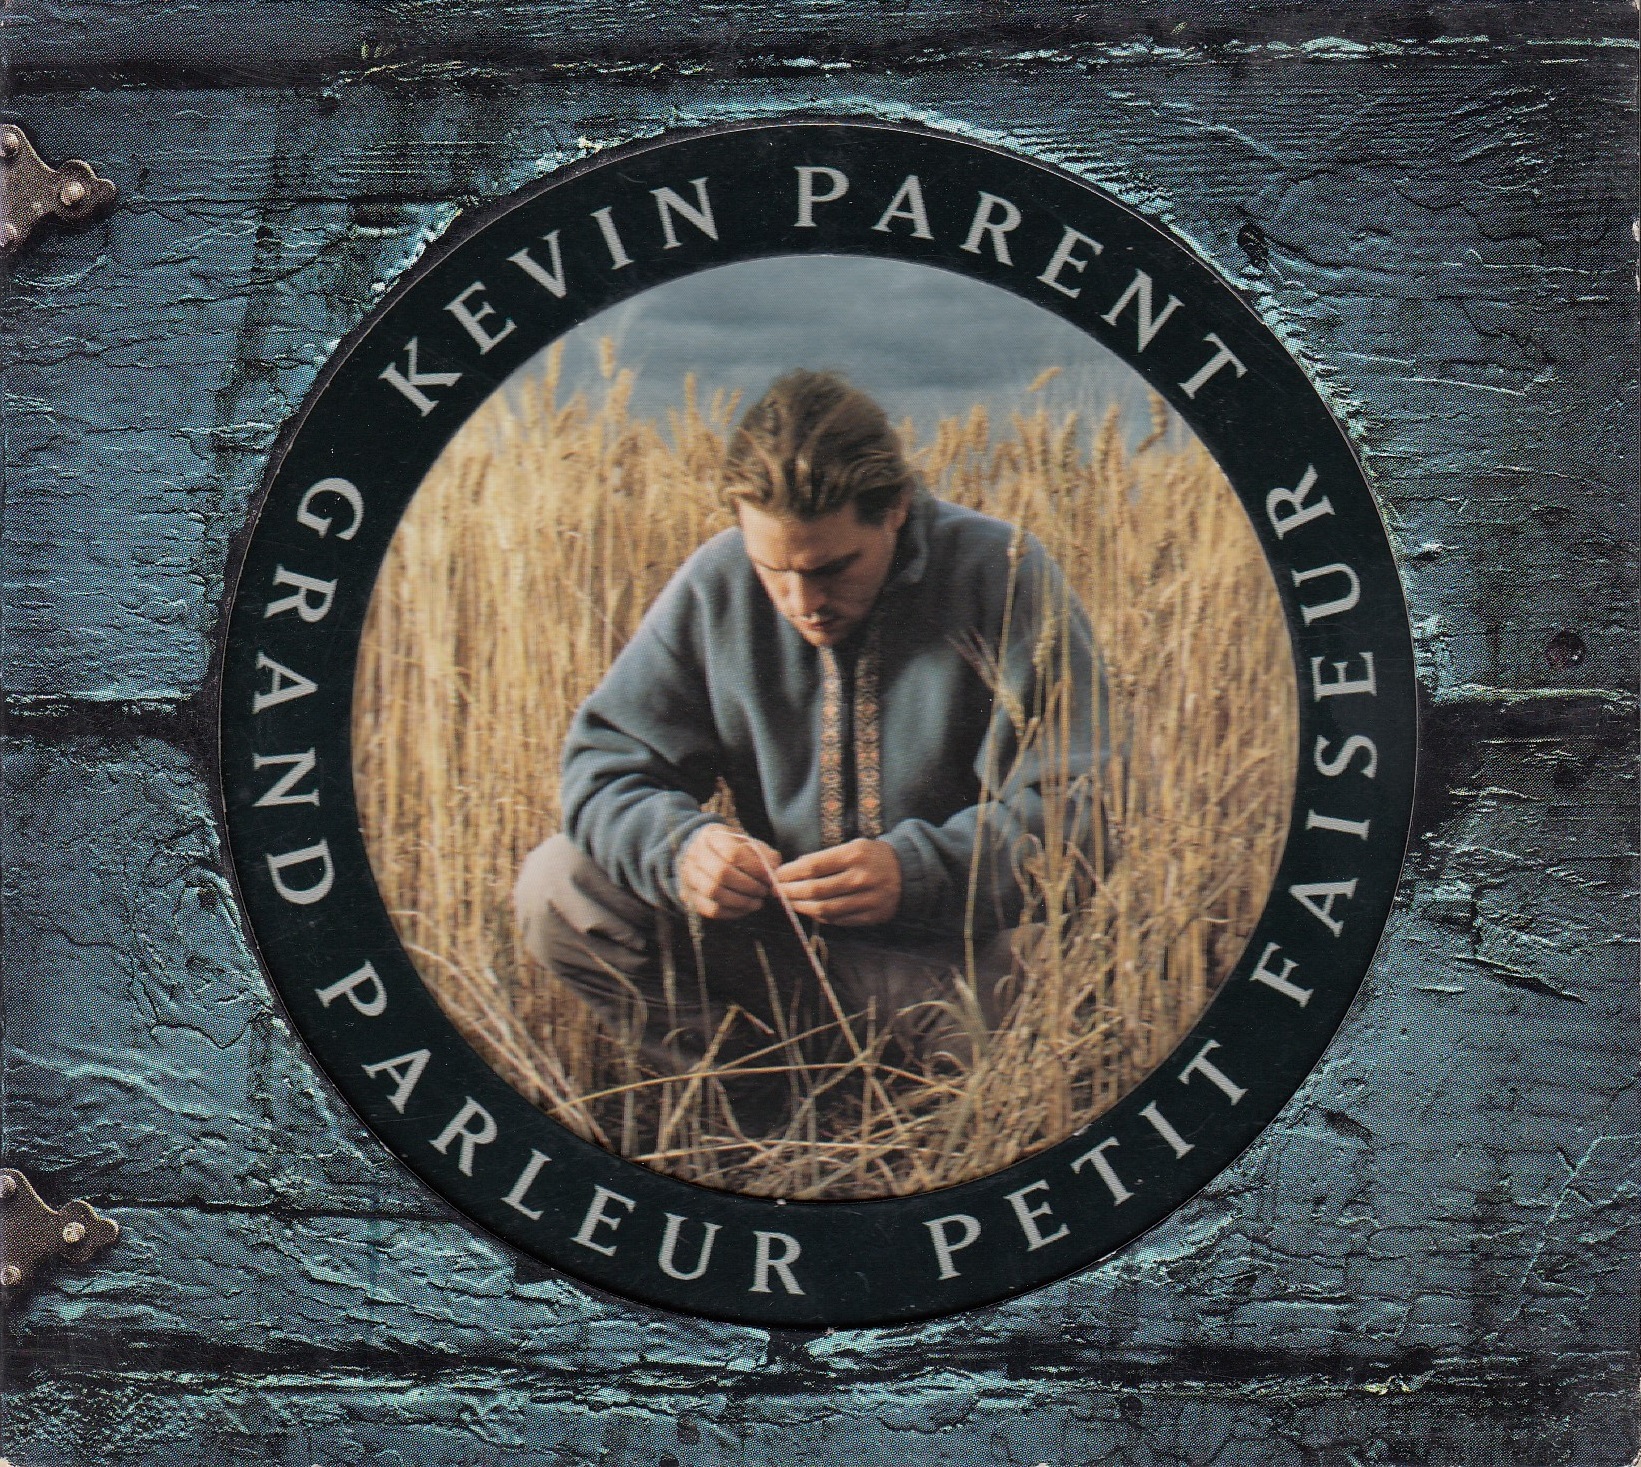 Kevin Parent